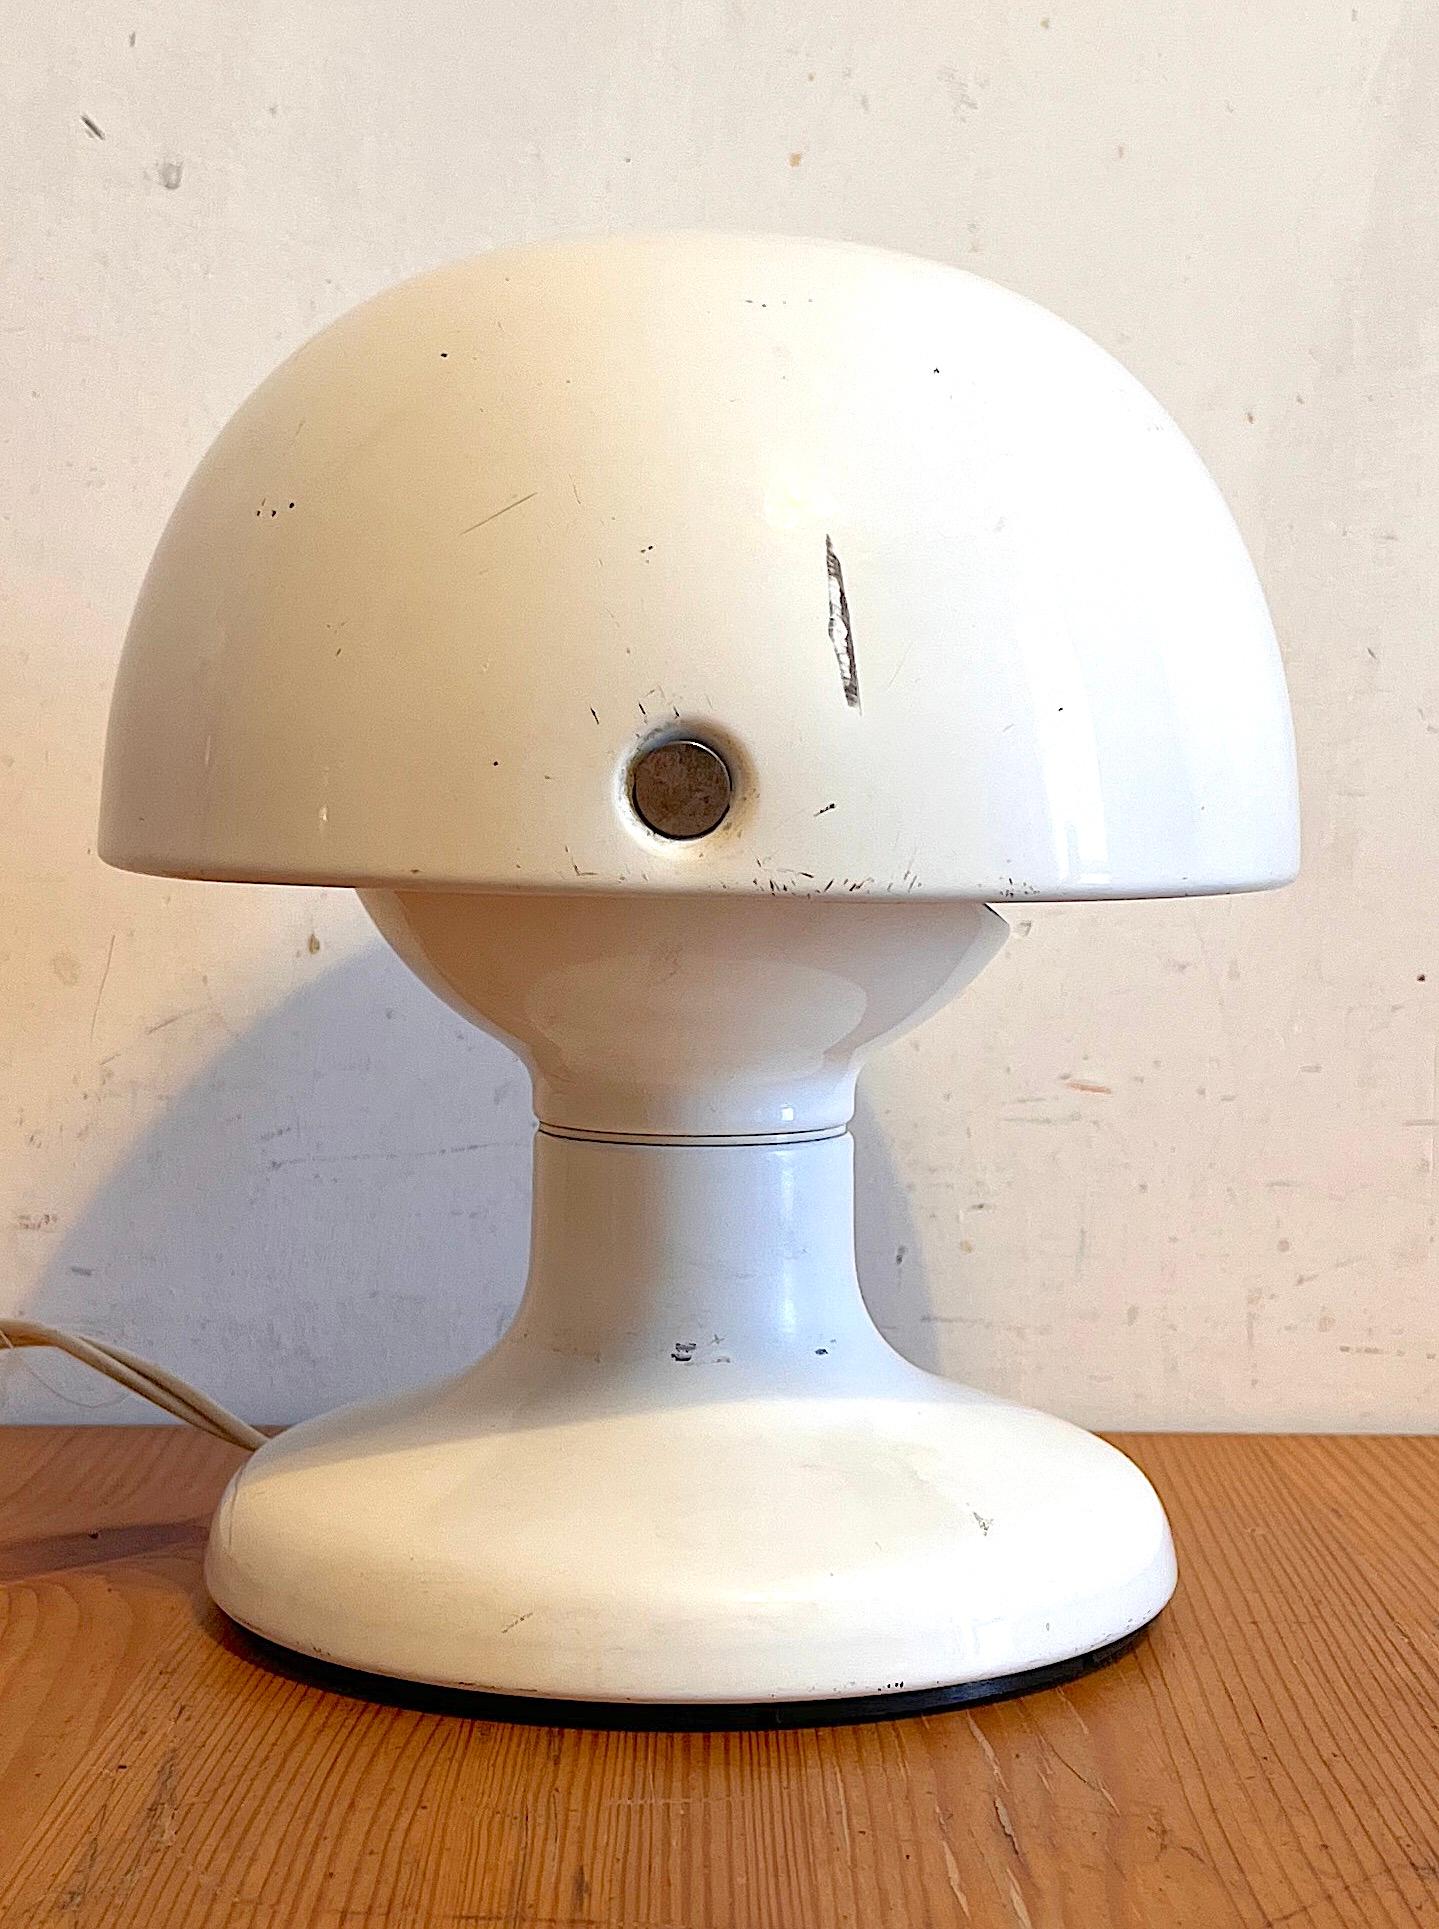 La lampada da tavolo Jucker incarna ed esprime chiaramente lo spirito degli anni Sessanta ed è ancora oggi un carismatico oggetto da collezione, ambito come quando fu presentata per la prima volta nel 1963. Alta solo 21 centimetri, la lampada da